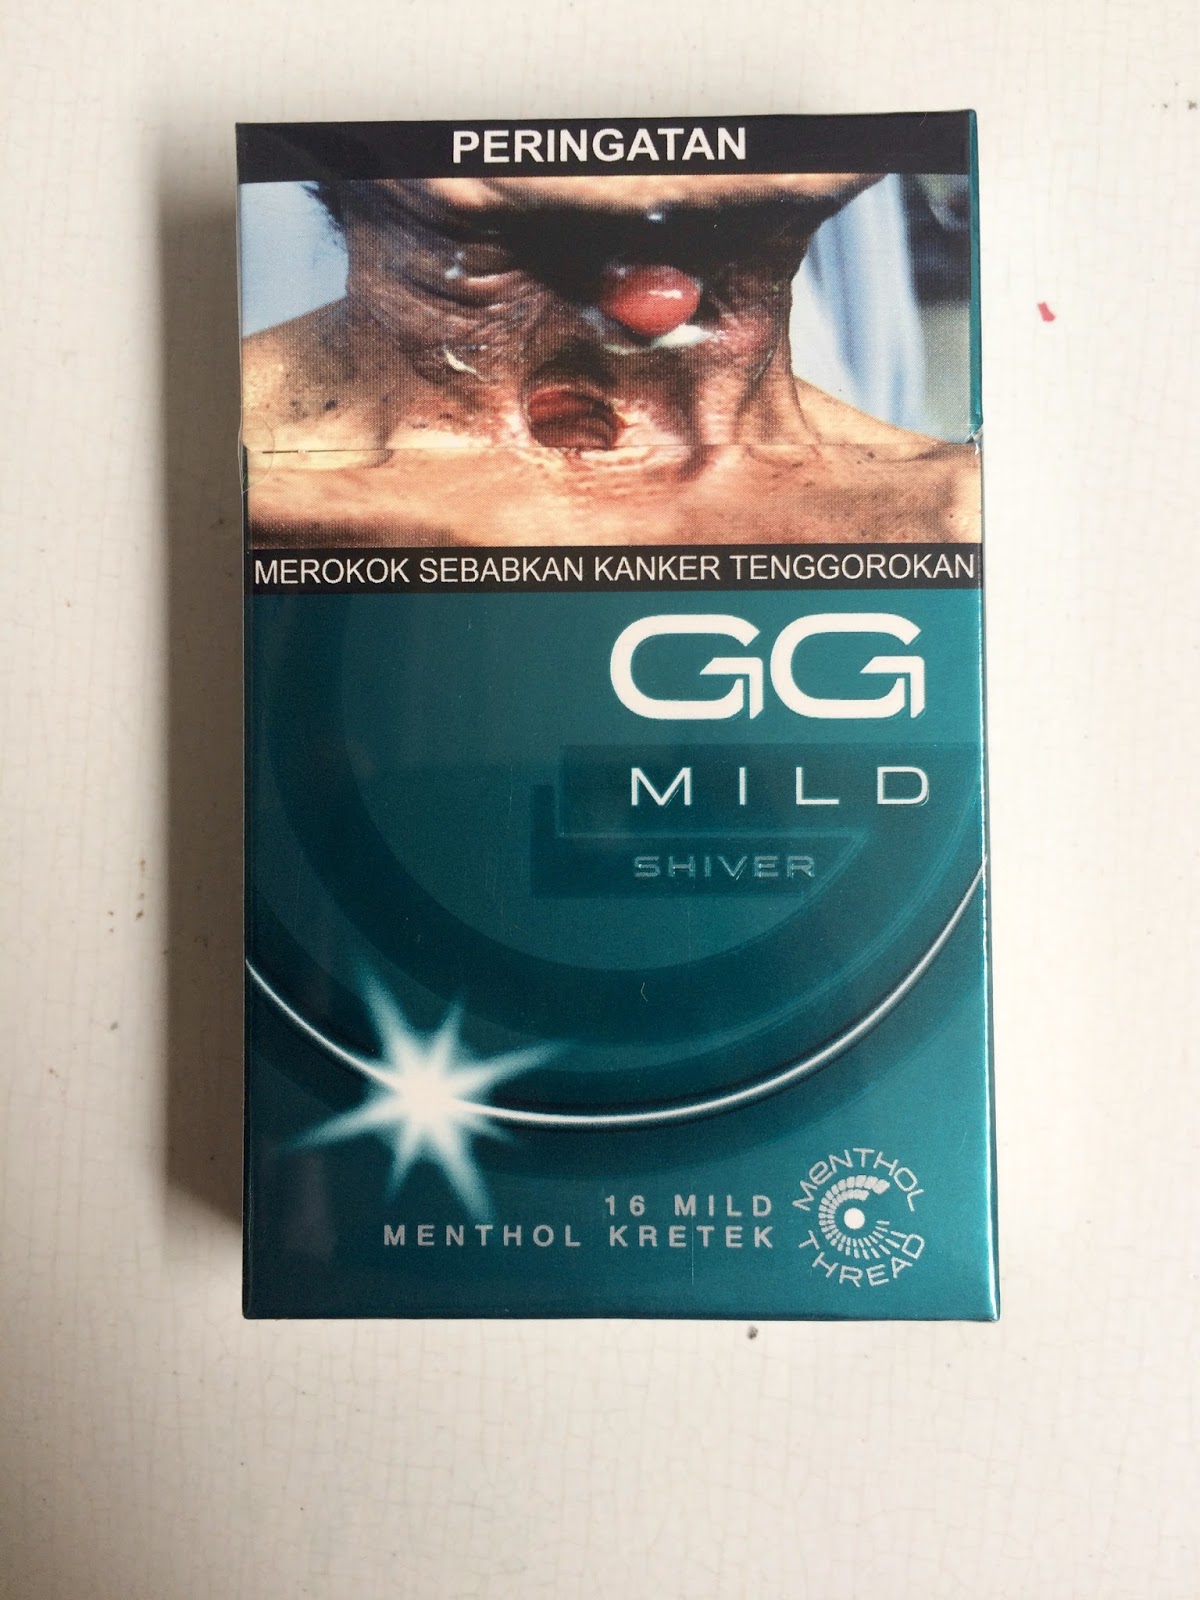 GG Mild Shiver, Rokok Mild dengan Menthol Thread Pertama dari Gudang Garam